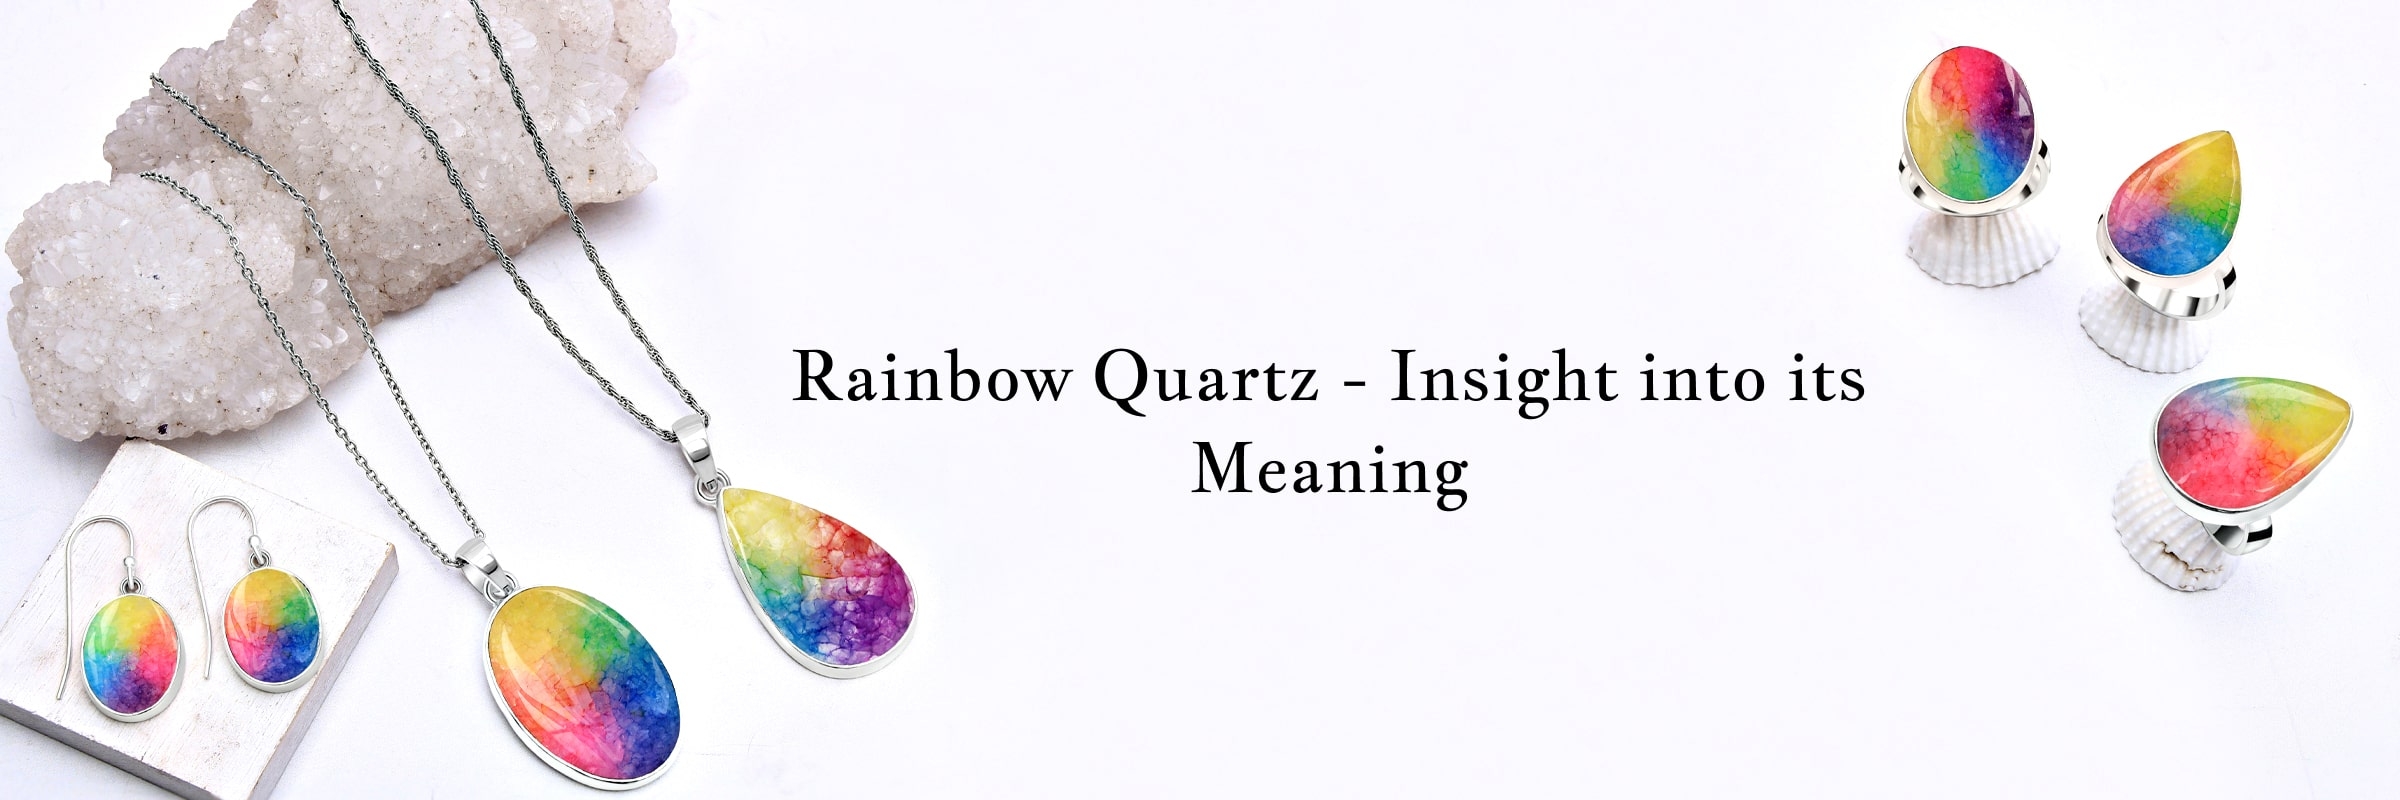 Rainbow Quartz Meaning